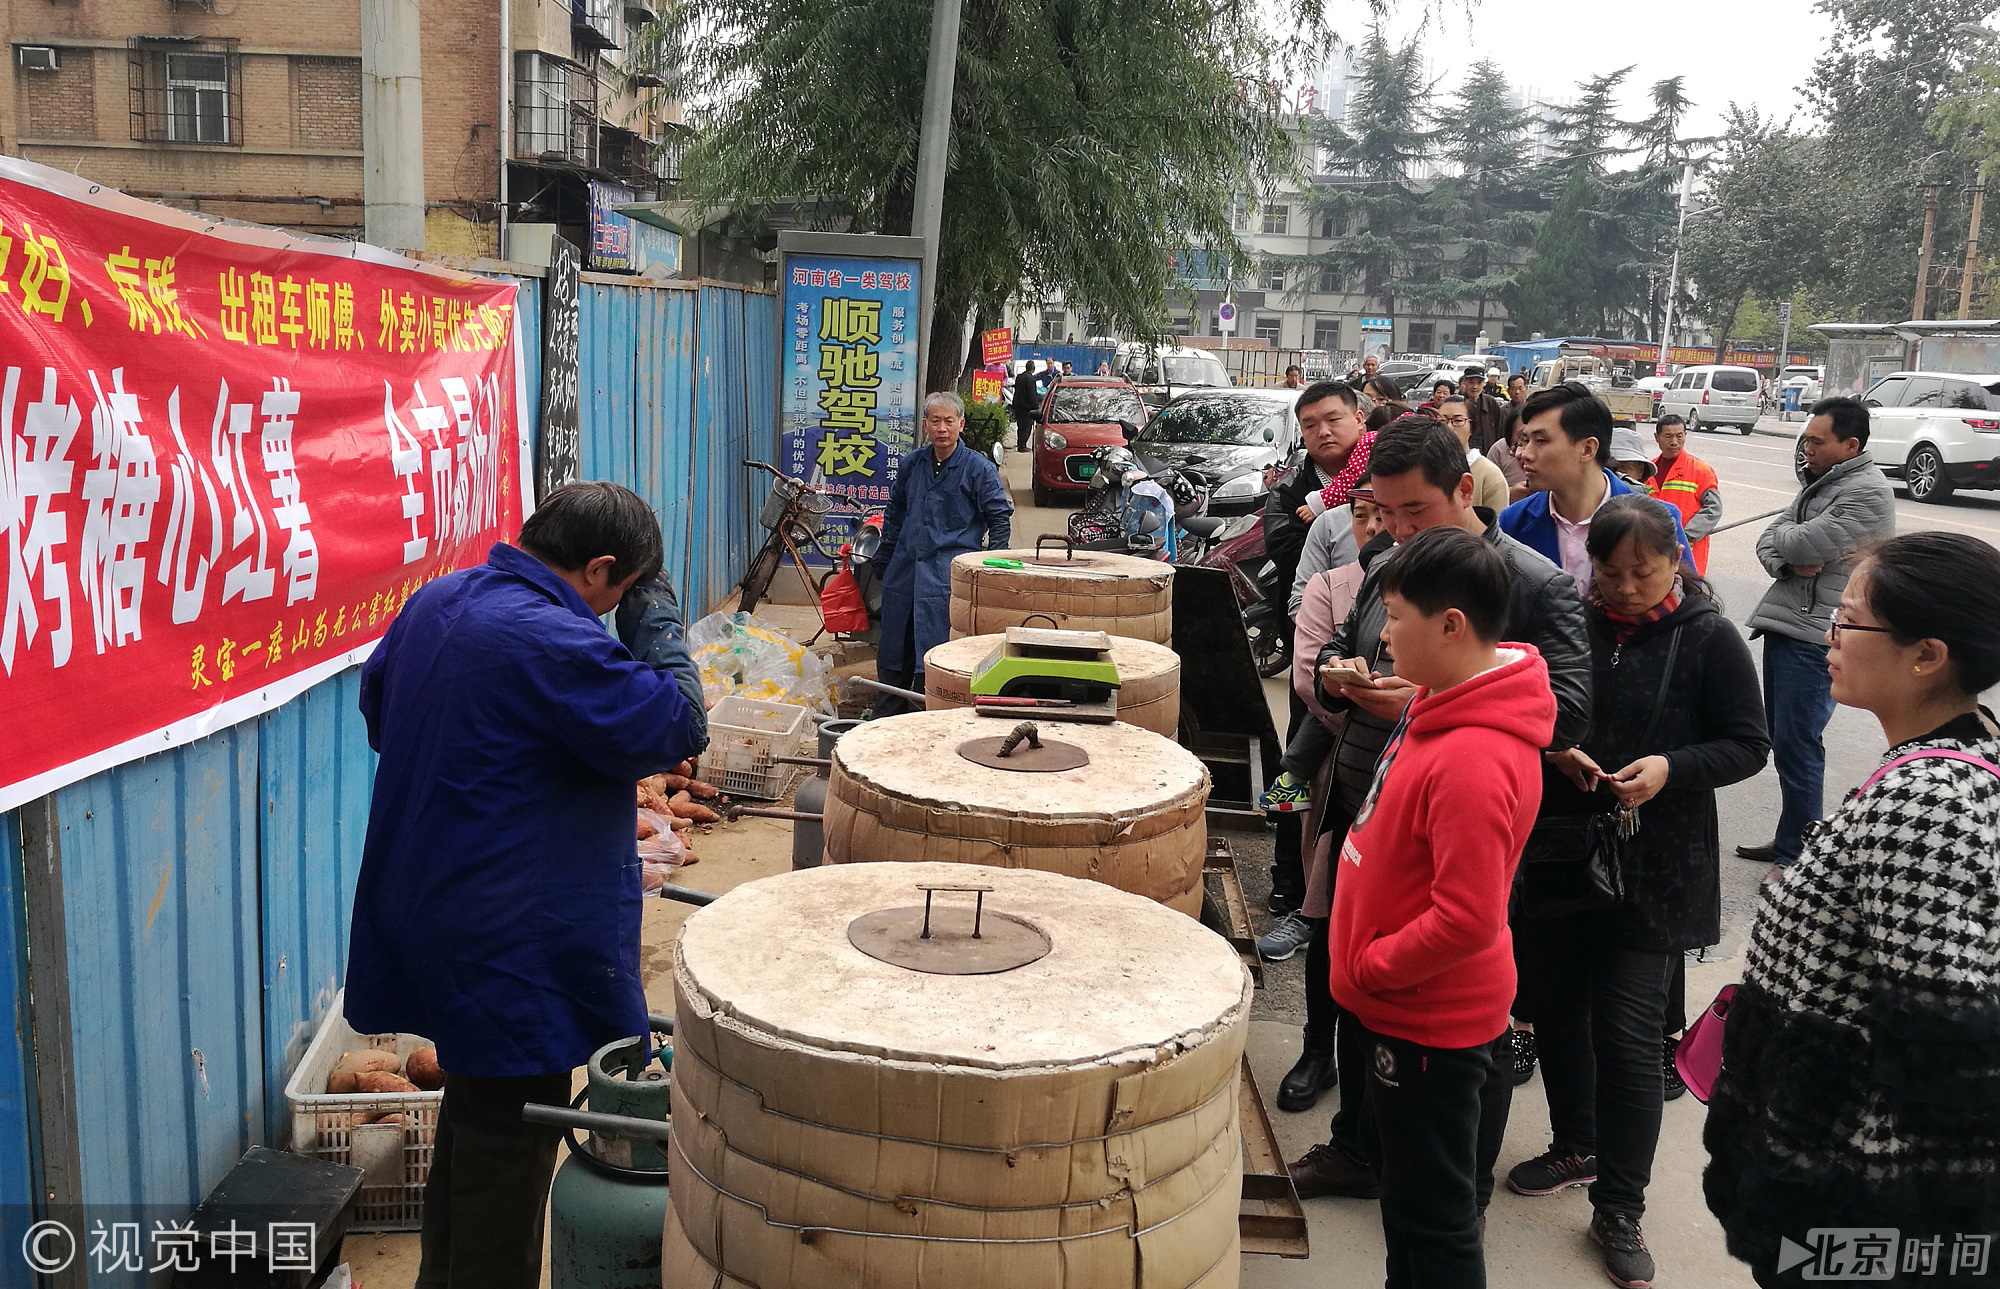 2017年10月21日，河南洛阳街头，一个卖烤红薯的摊位前架着4个大炉子，旁边排满了等待买烤红薯的市民。